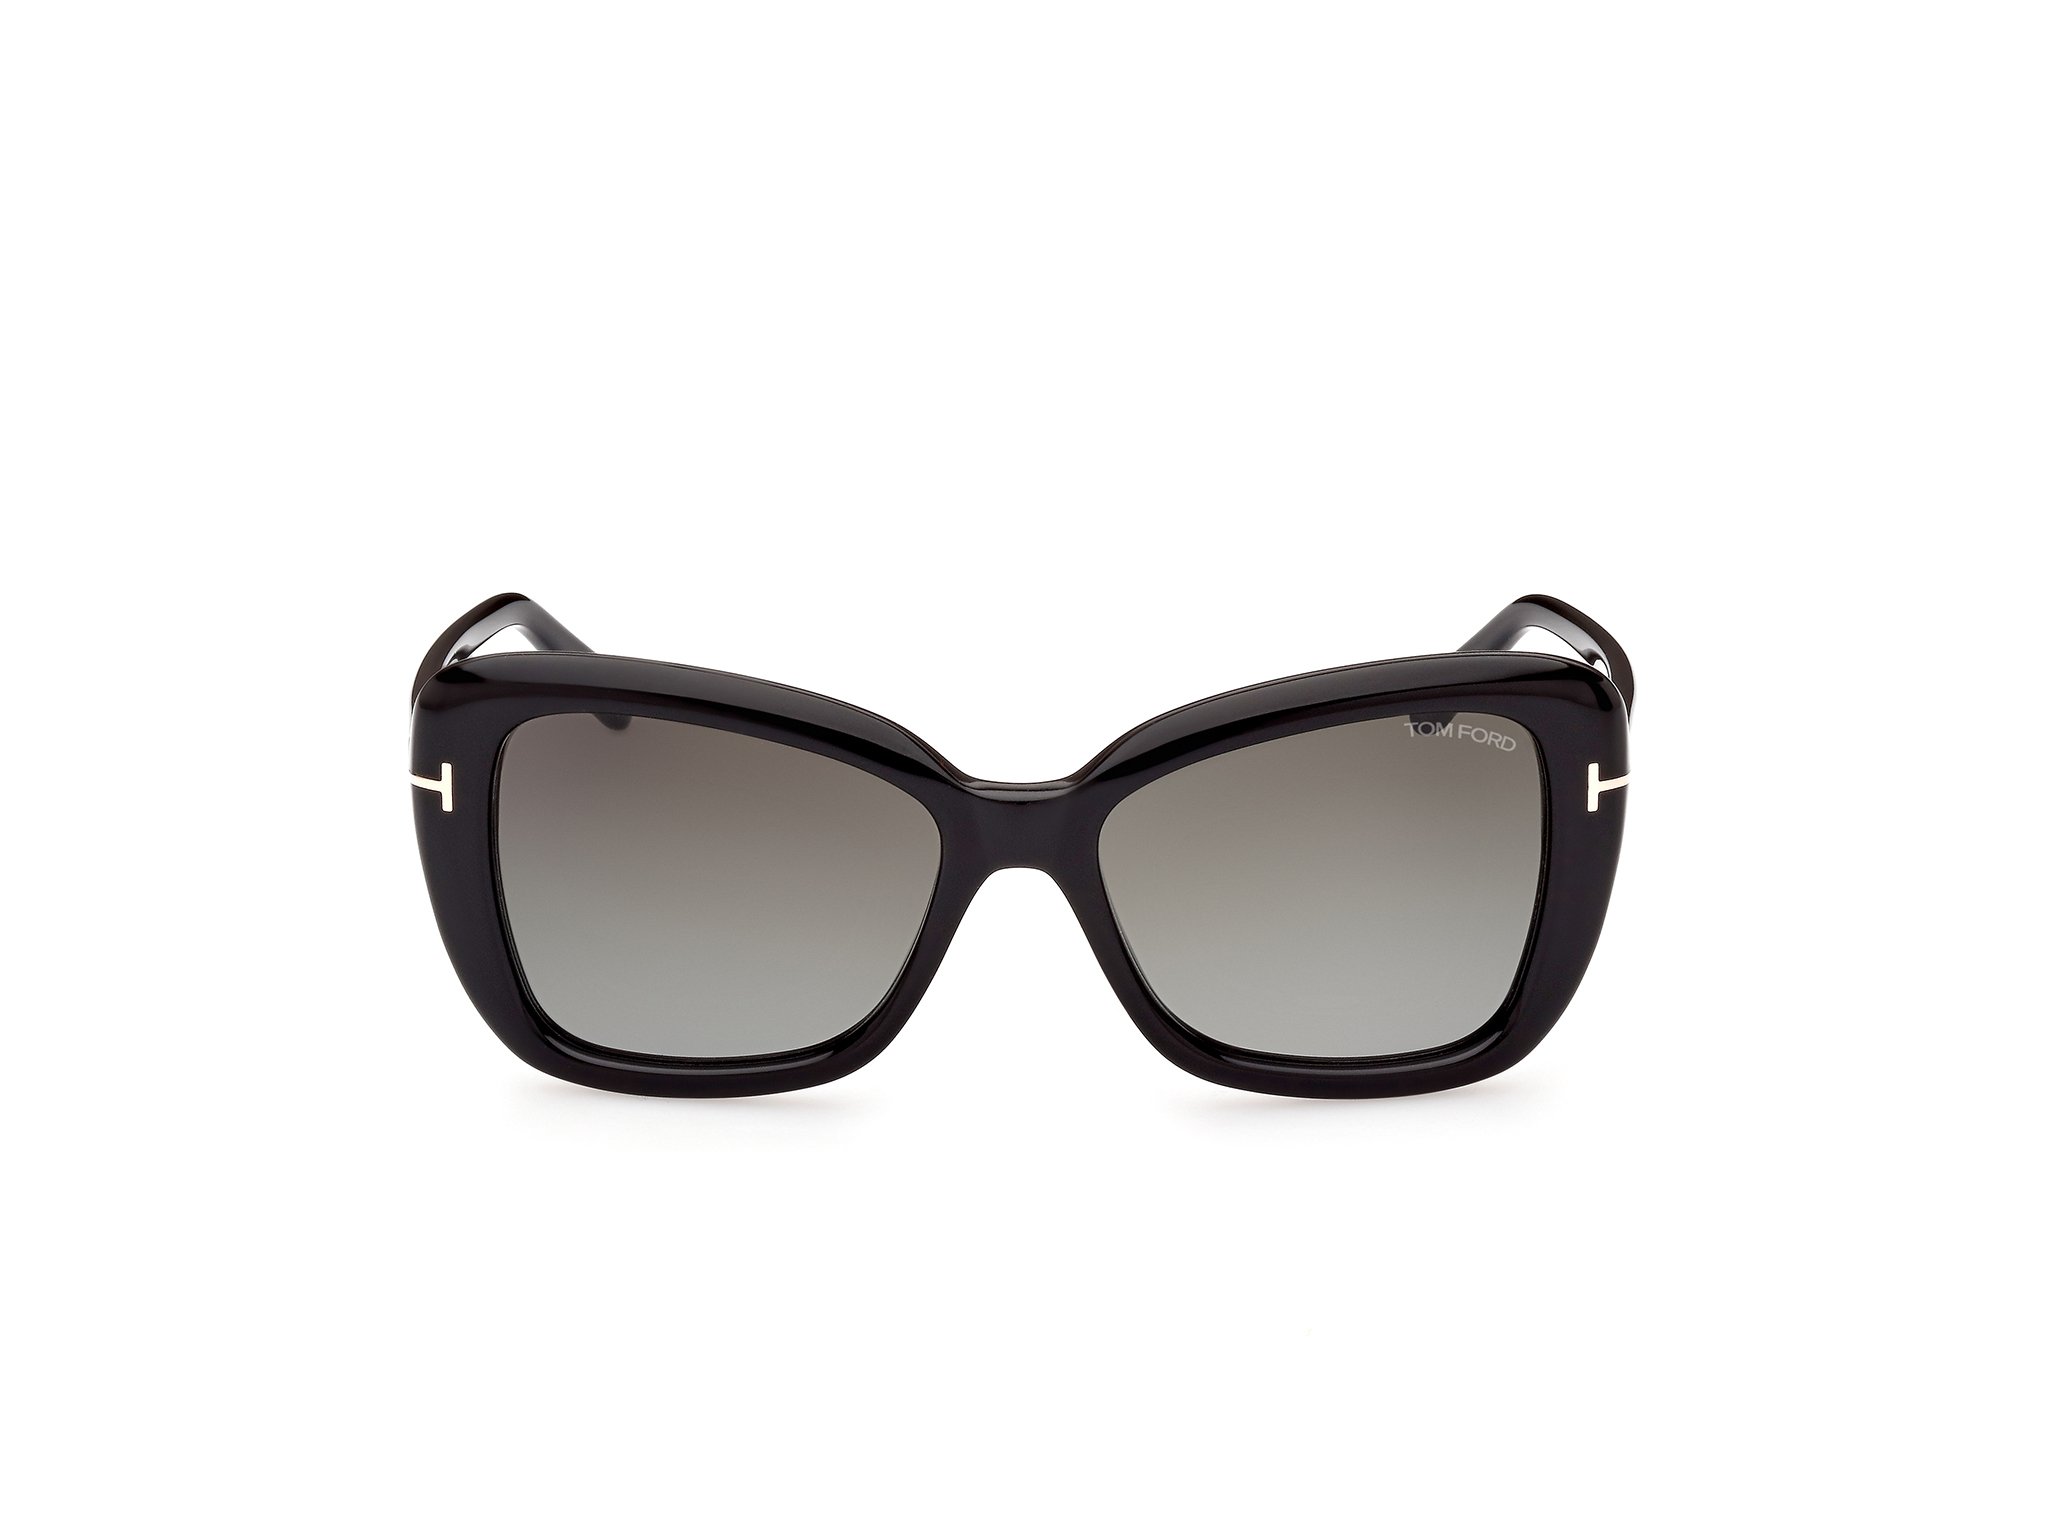 Das Bild zeigt die Sonnenbrille FT1008 der Marke Tom Ford in schwarz von vorne.